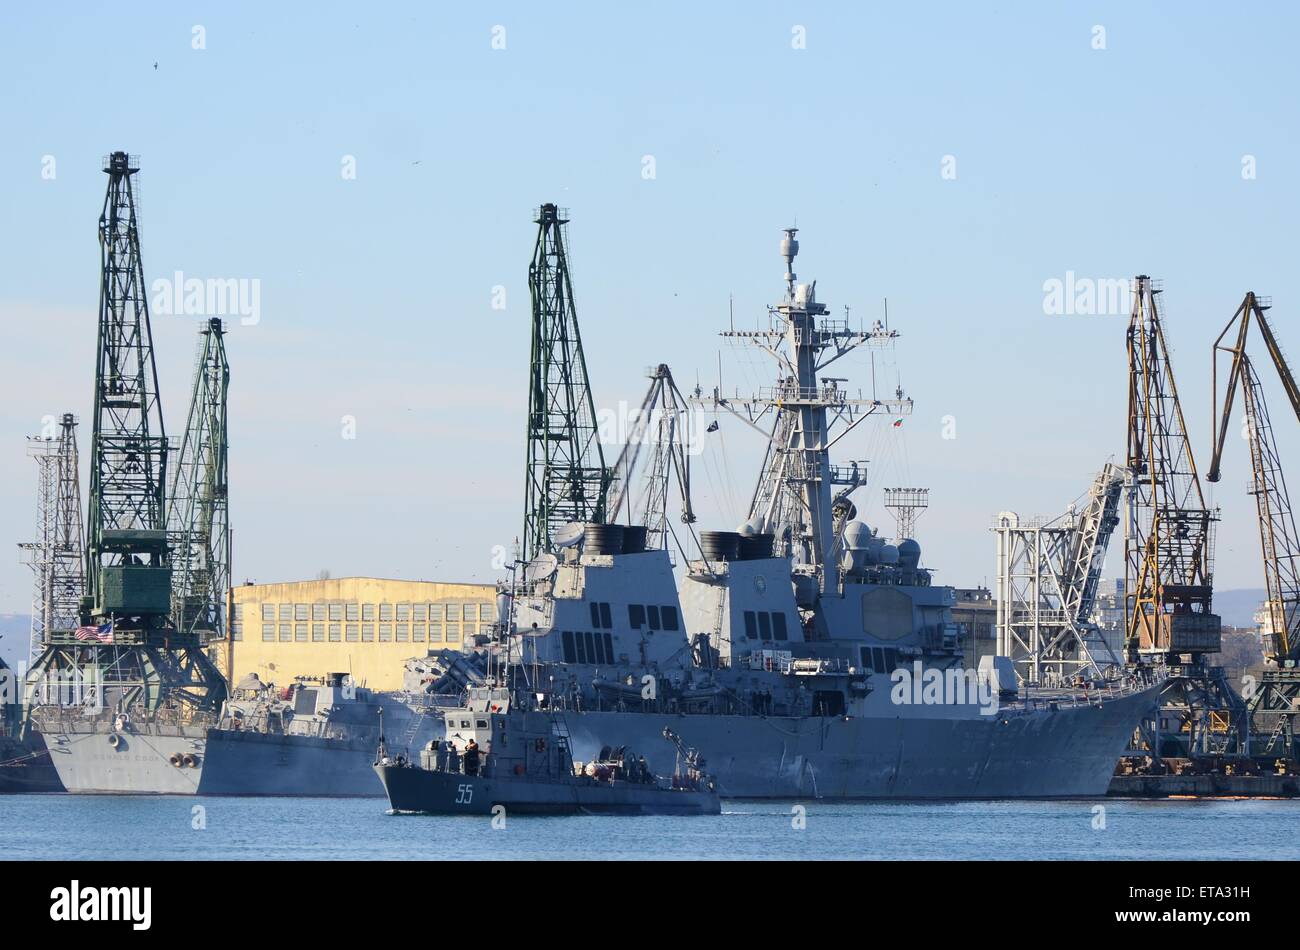 L'USS Donald Cook brick palas le port de la mer Noire de Varna, au nord-est de la capitale bulgare Sofia, le Jeudi, Janvier 08, 2015. Selon l'exposé, la présence de navires dans la mer Noire est compatible avec le droit international et est à l'appui de l'opération Atlantic résoudre, démontrant l'engagement de l'Amérique à la paix et la sécurité en Europe. C'est la deuxième fois cette année le navire entre dans la mer Noire et son mouvement est directement liée à la rôle présumé dans le cadre de la crise ukrainienne. Photo par : Impact Presse Groupe comprend : Bulgarie USS Donald Cook Où : Varna, Bulgarie Banque D'Images